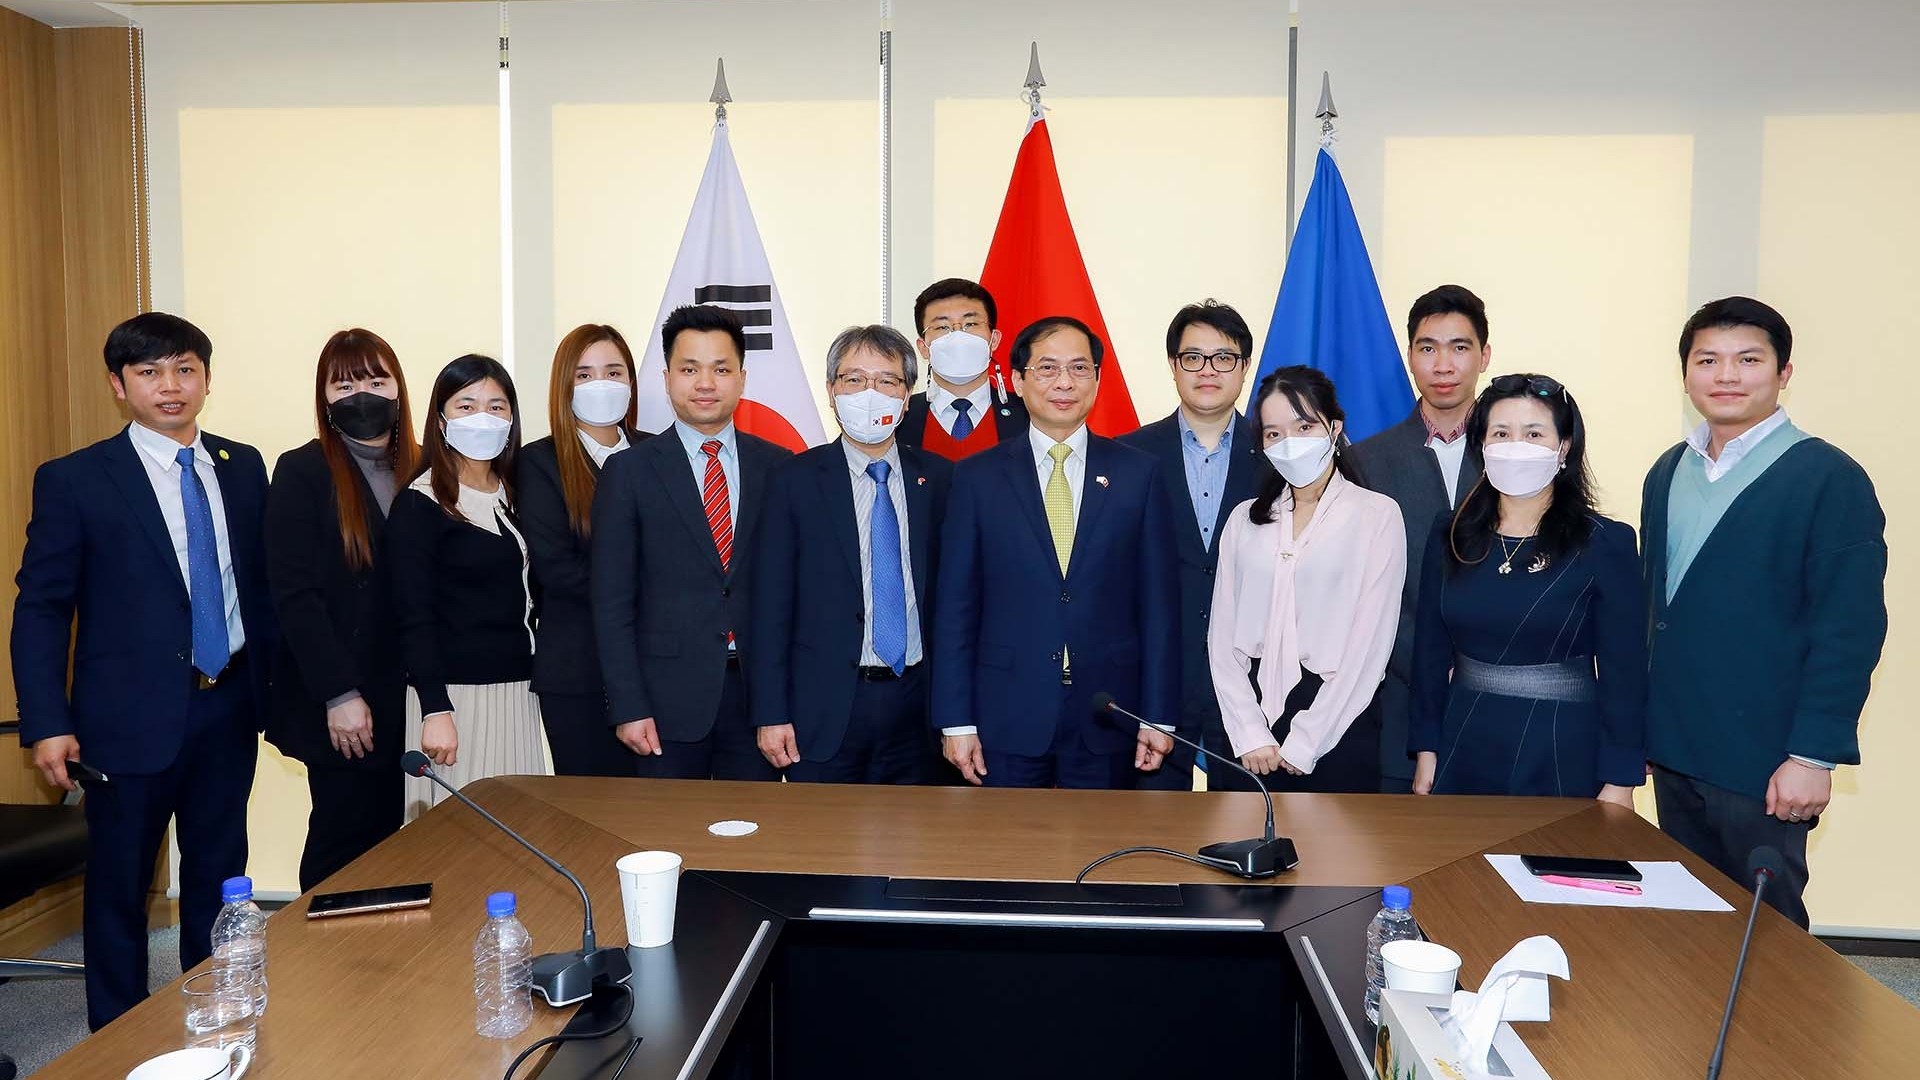 Bộ trưởng Ngoại giao Bùi Thanh Sơn gặp đại diện các tổ chức hội đoàn người Việt tại Hàn Quốc